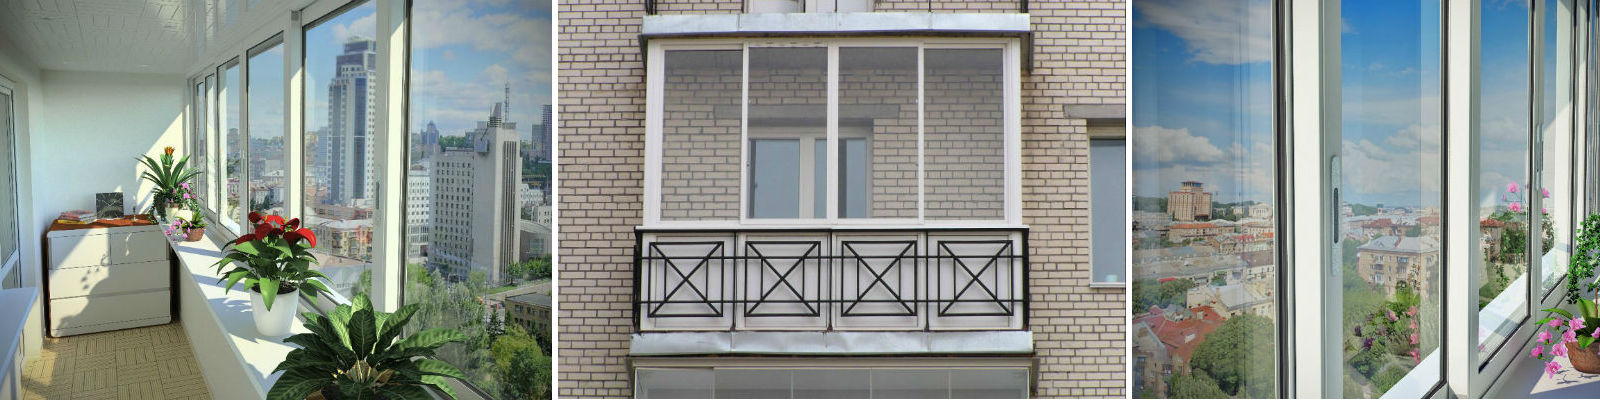 Остекление балконов окнами ПВХ